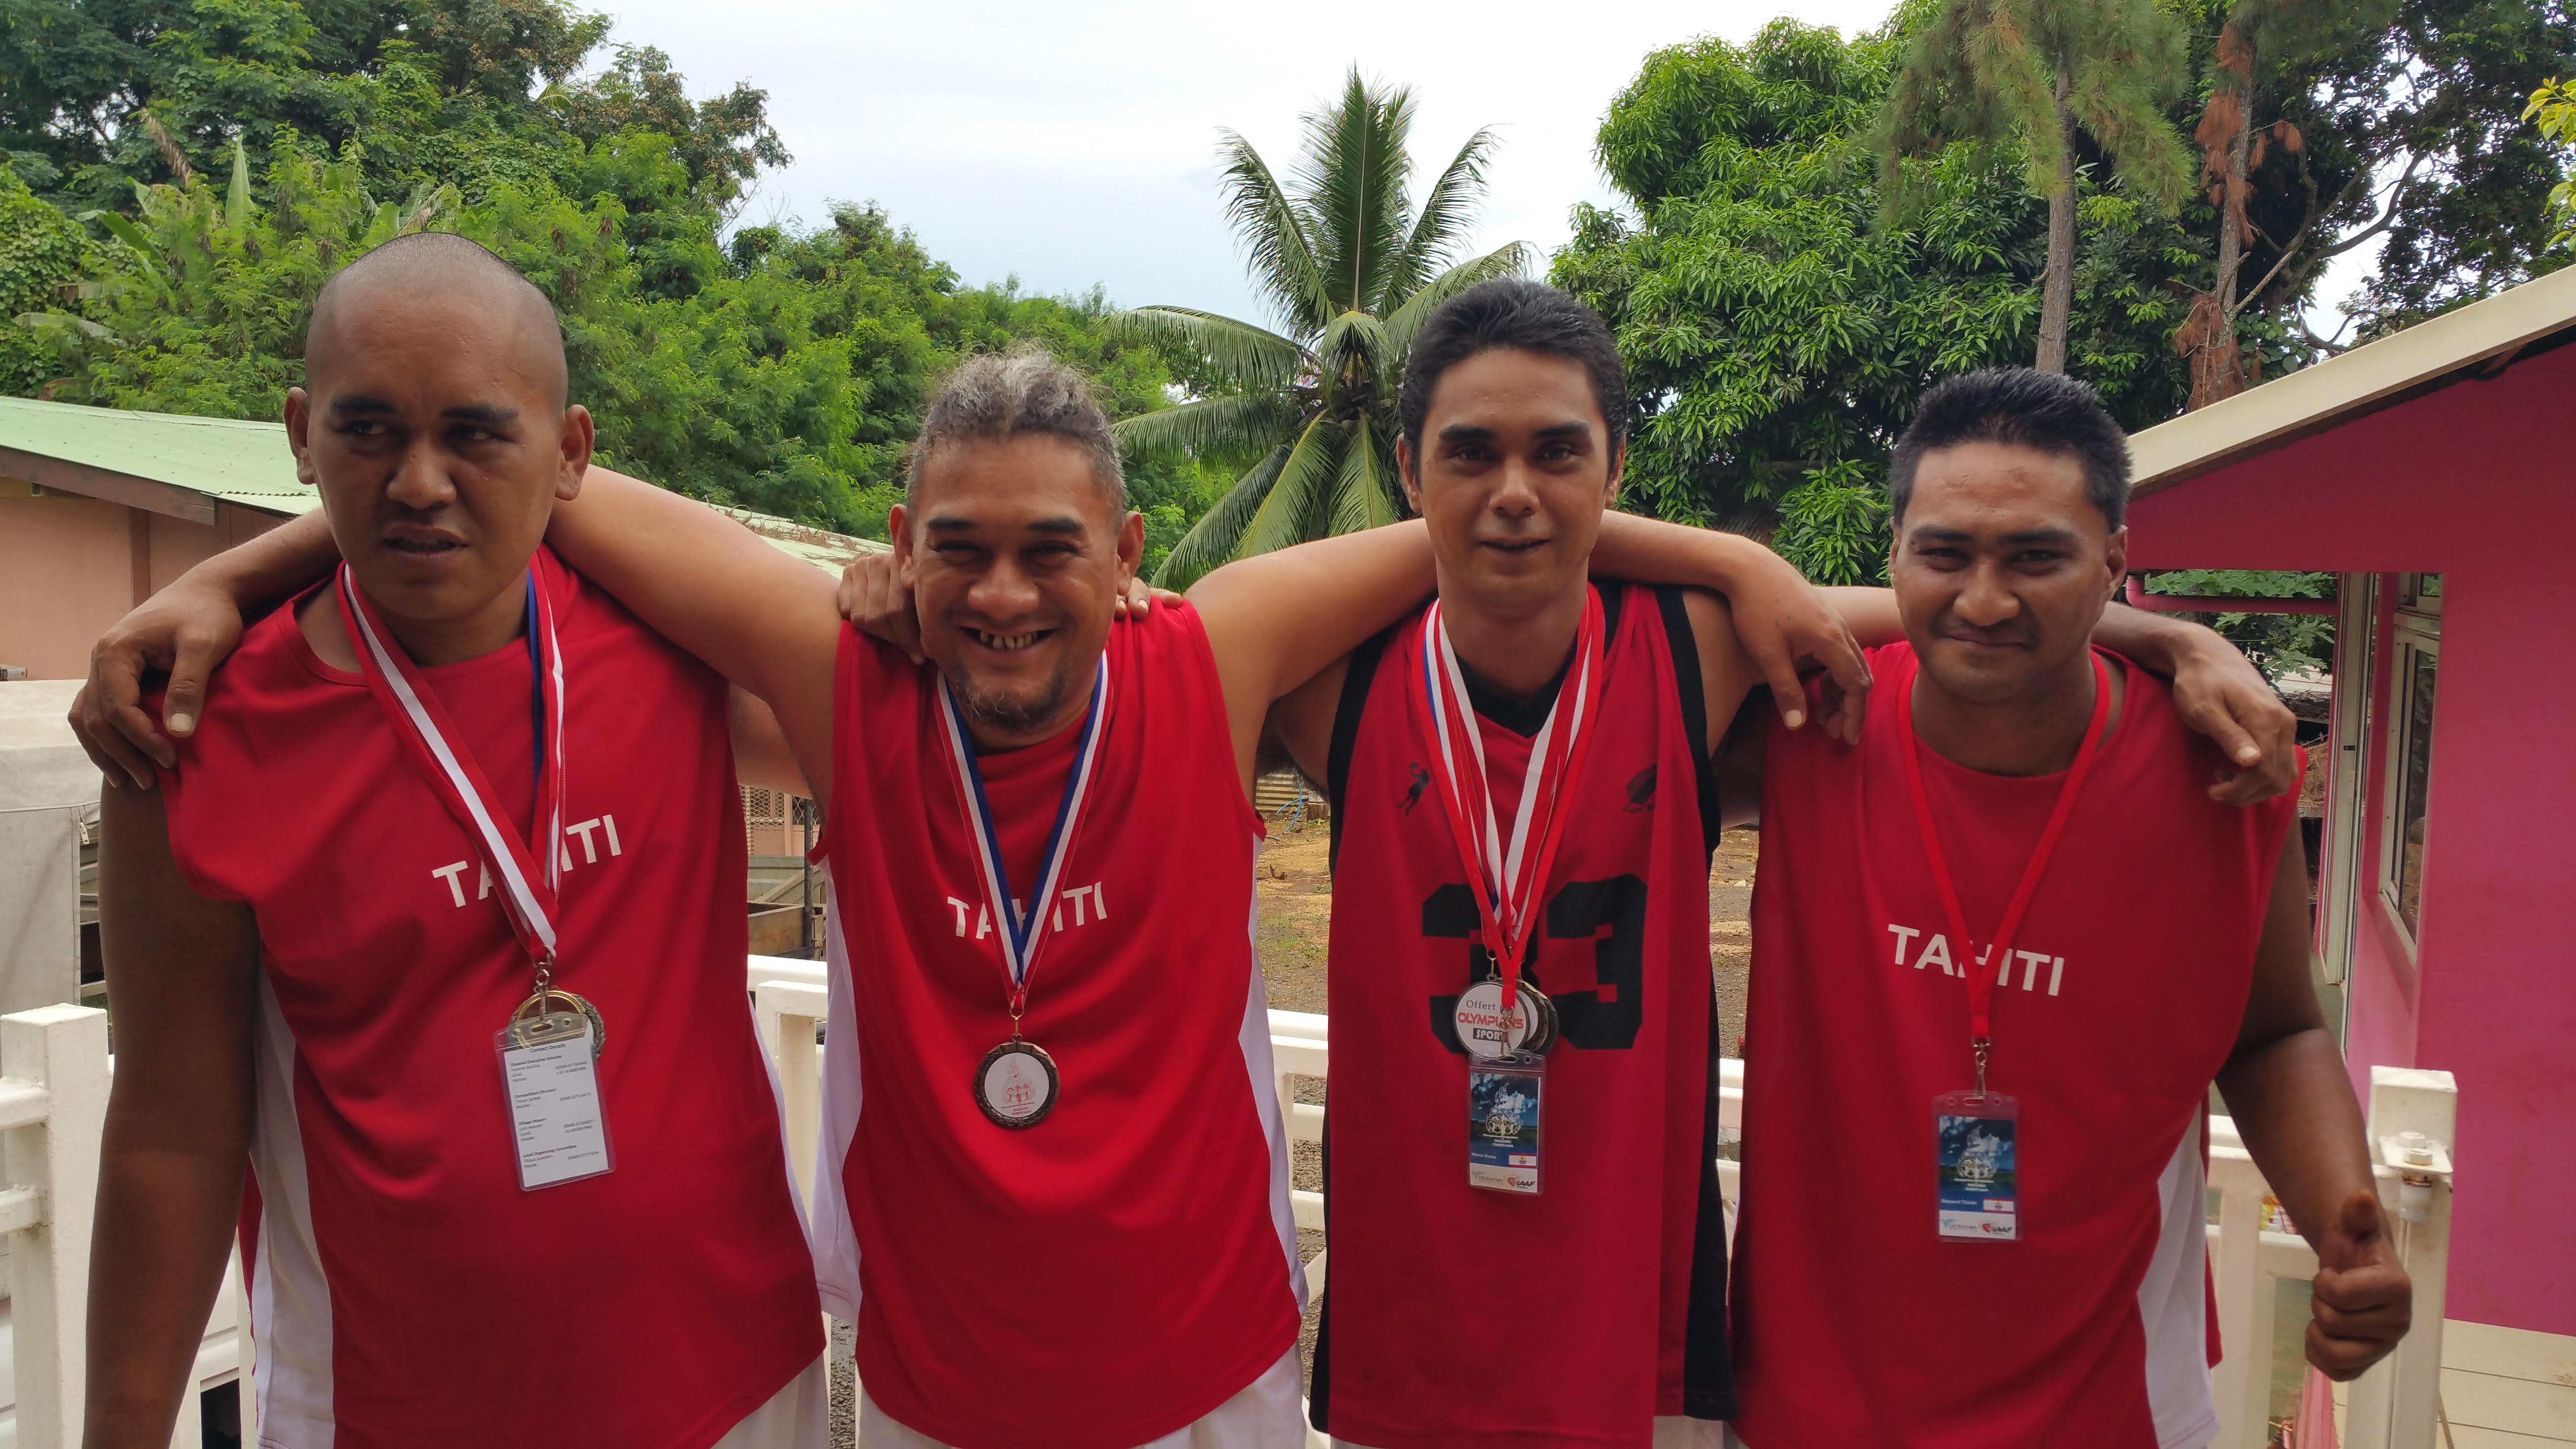 Les membres de l'association Rimahere ont remporté cinq médailles aux jeux Oceania 2016